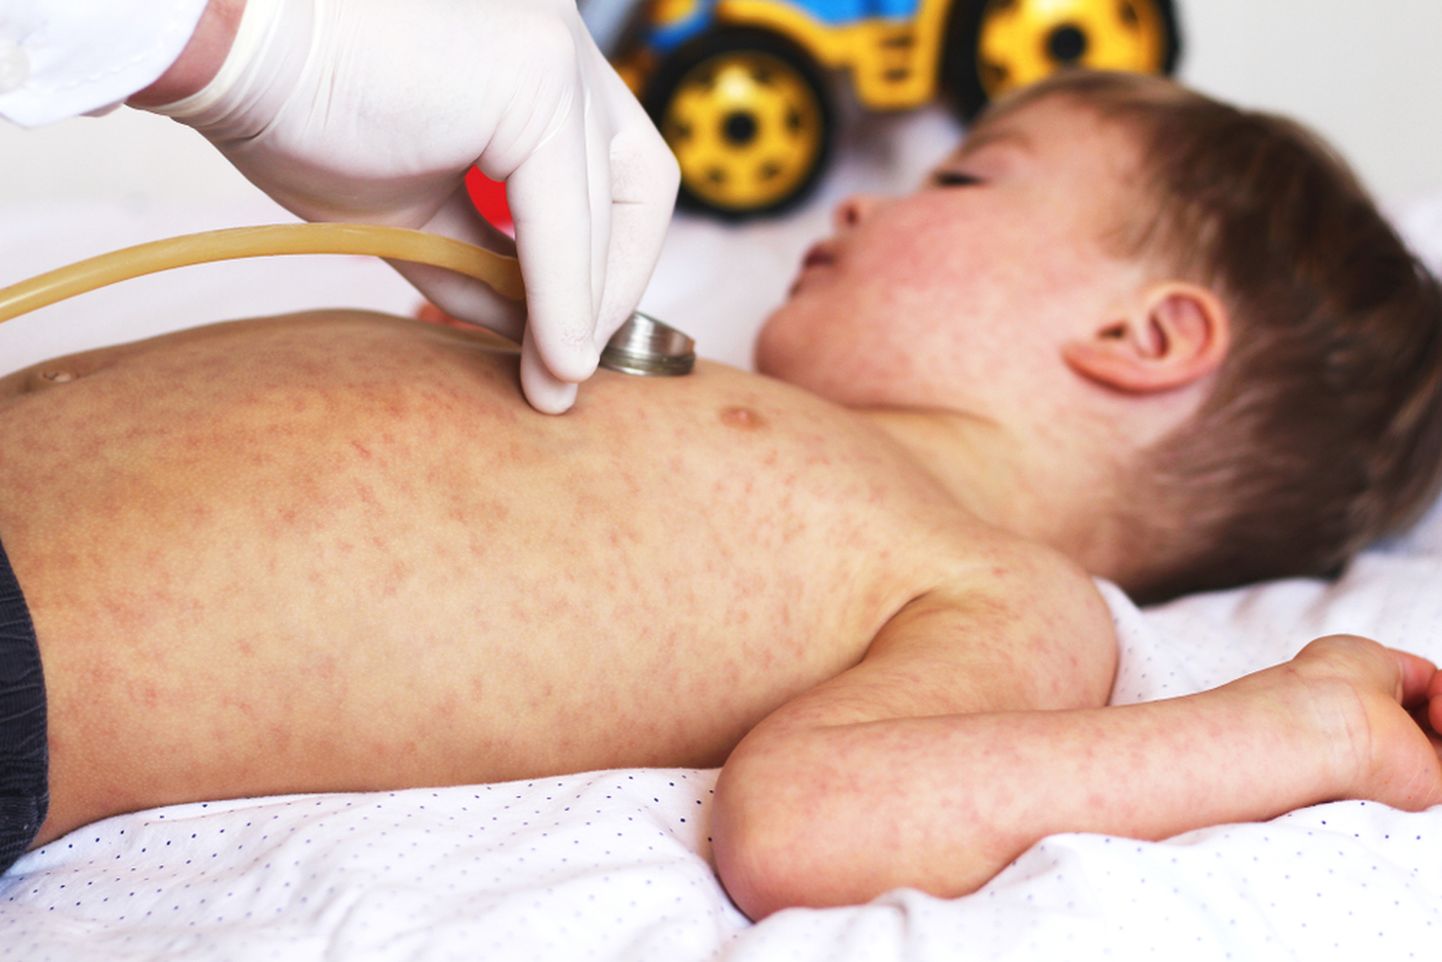 Leetrid on kõrge nakkavusega viirusliku päritoluga äge nakkushaigus.